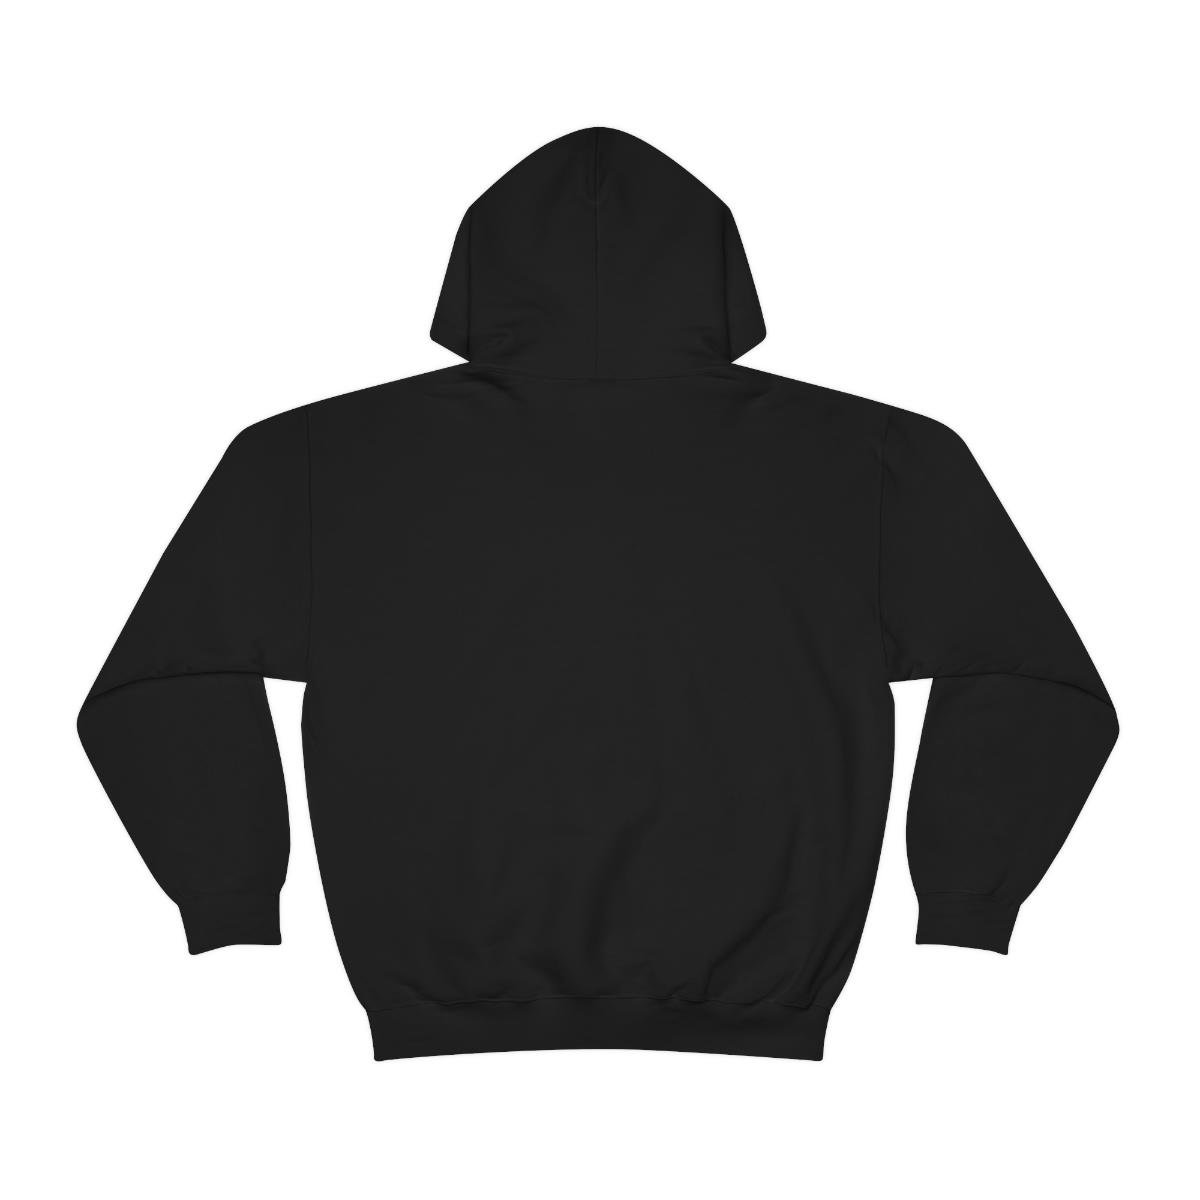 KarkaradoN logo Pullover Hooded Sweatshirt